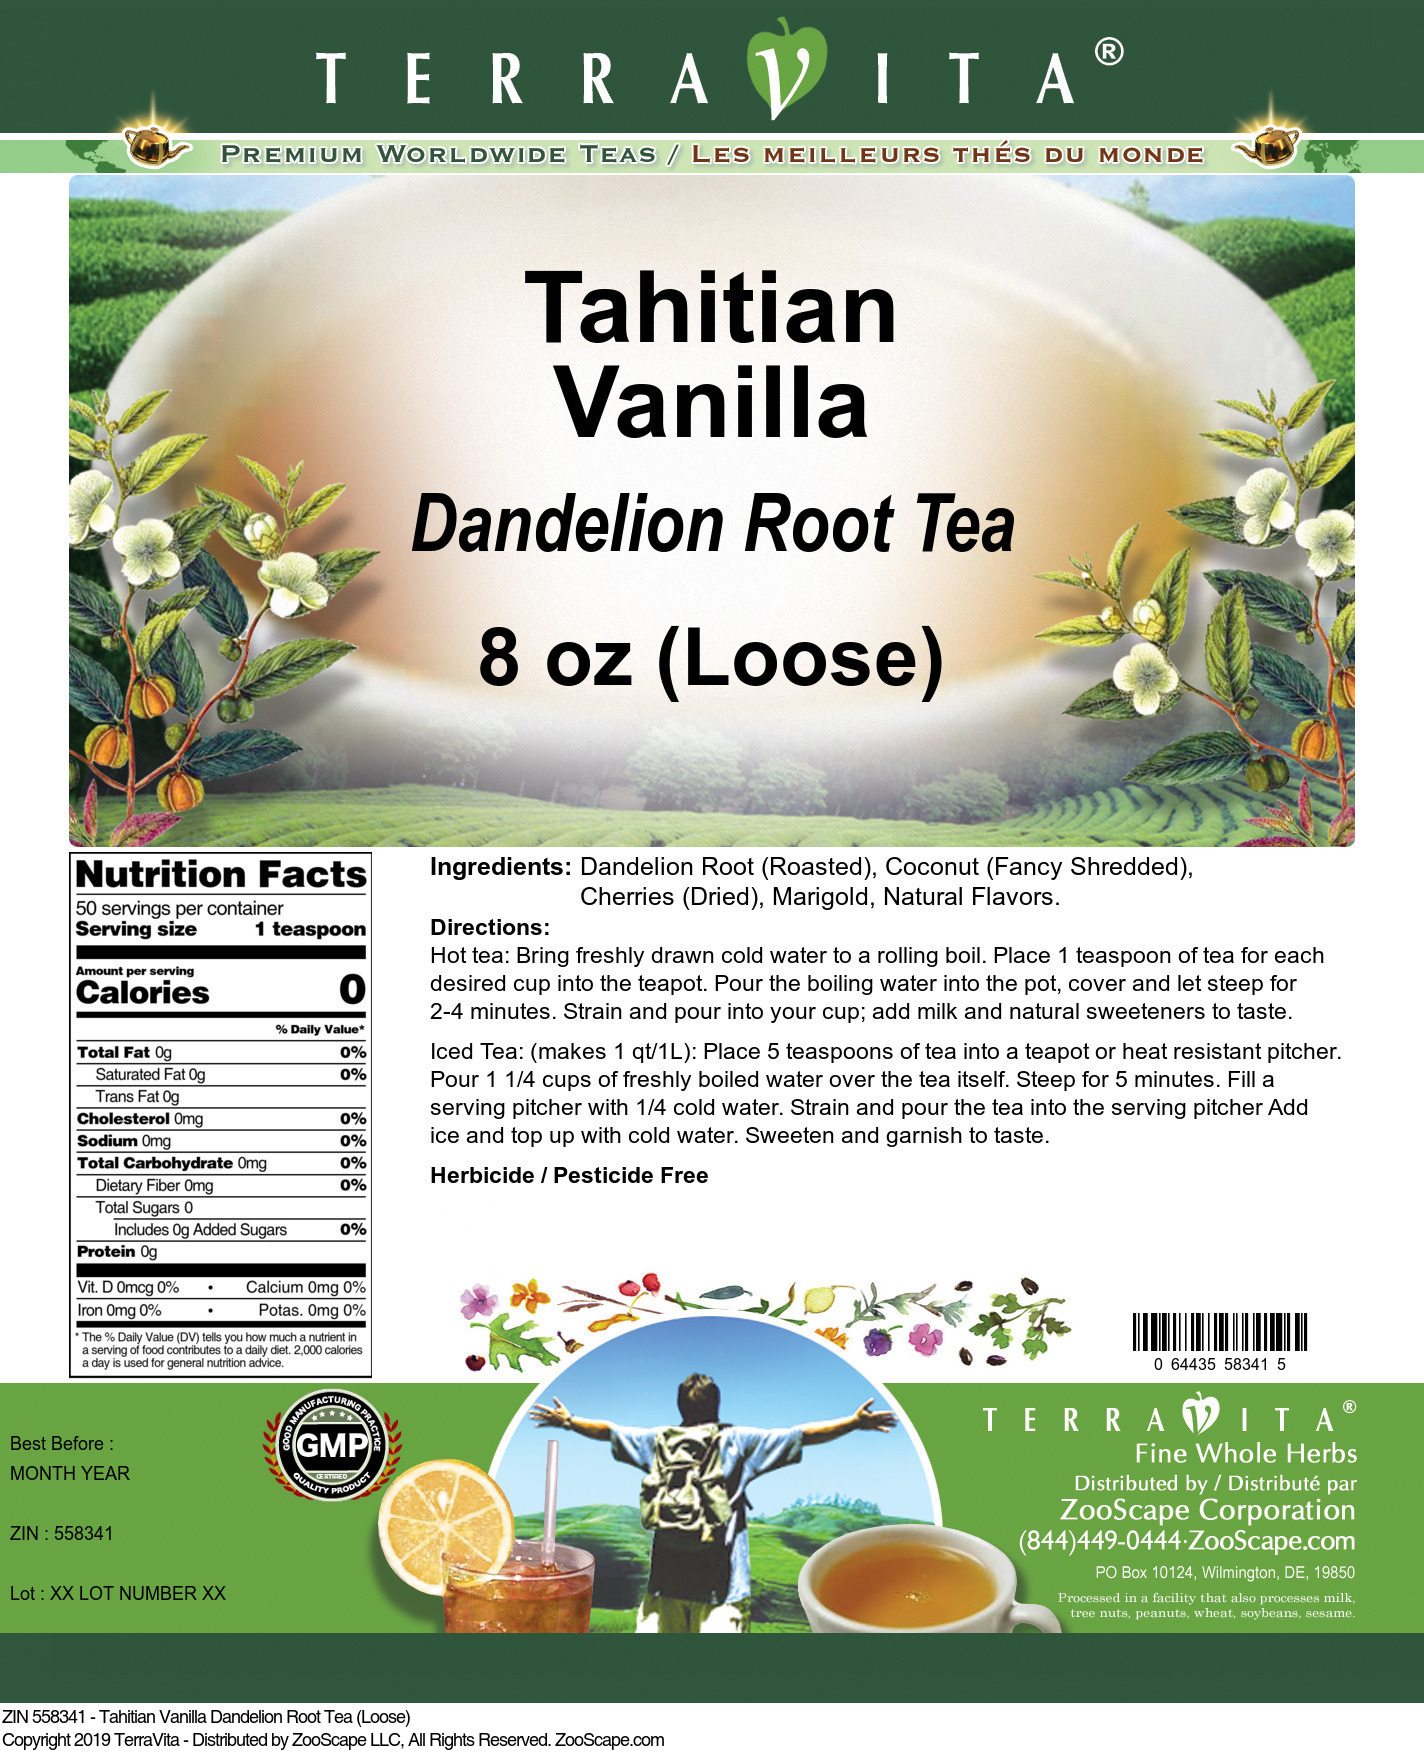 Tahitian Vanilla Dandelion Root Tea (Loose) - Label